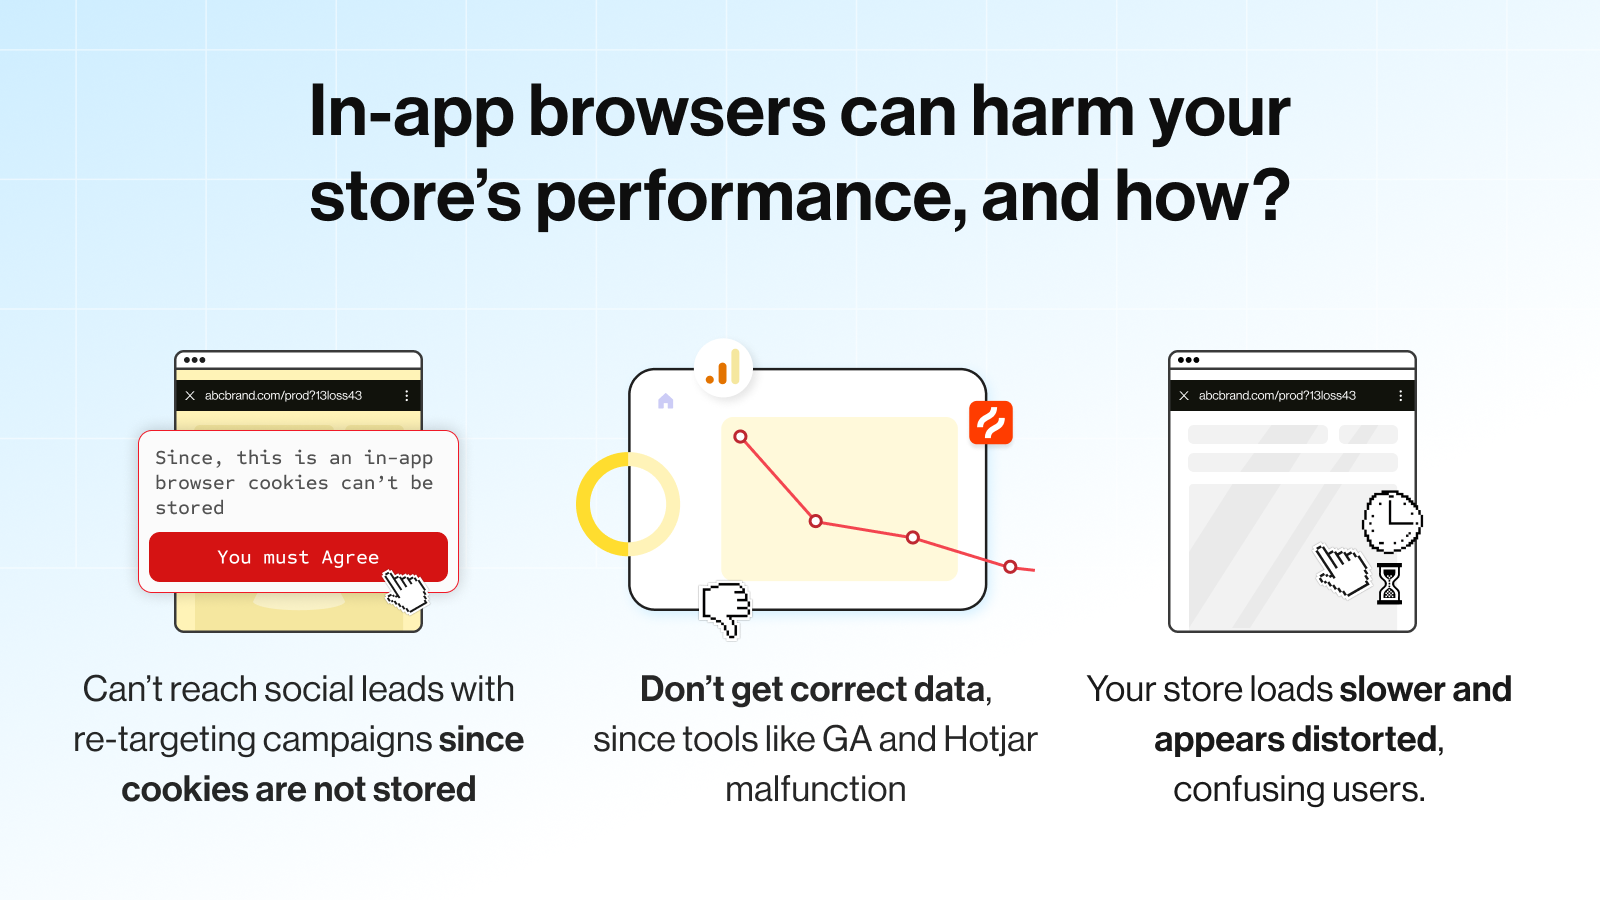 Hur skadar in-app-webbläsare din butiksprestanda?